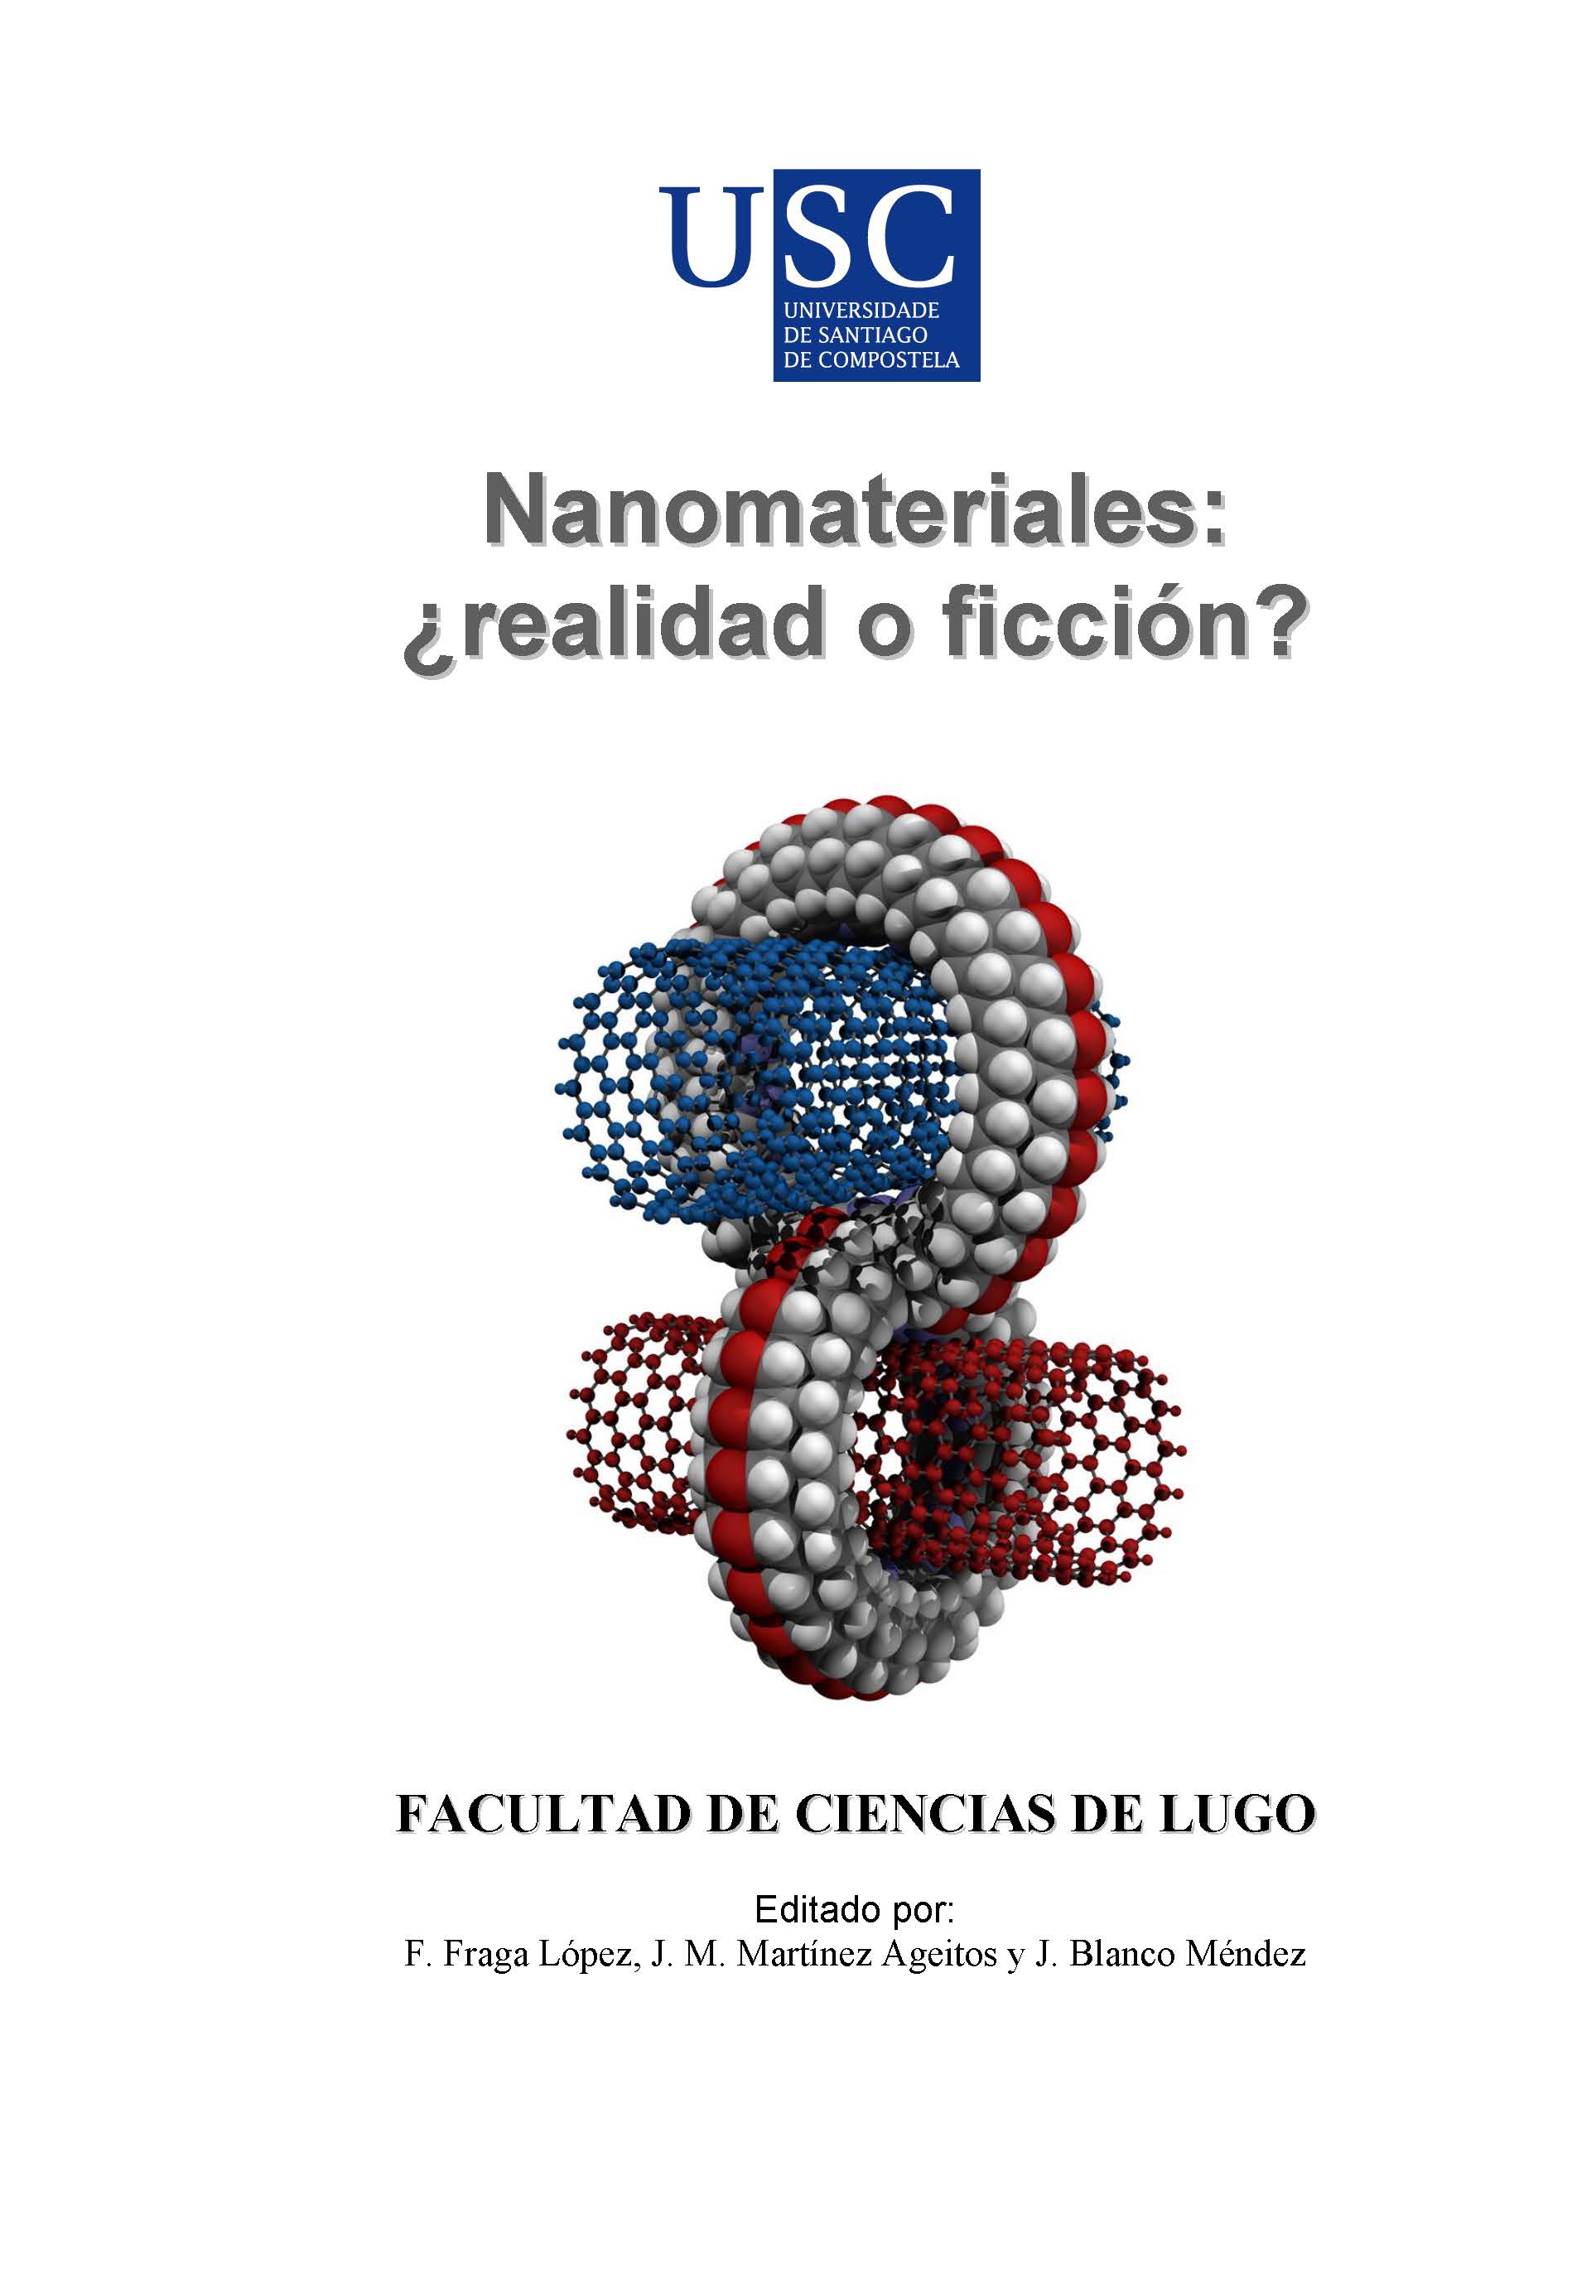 Imagen de portada del libro Nanomateriales